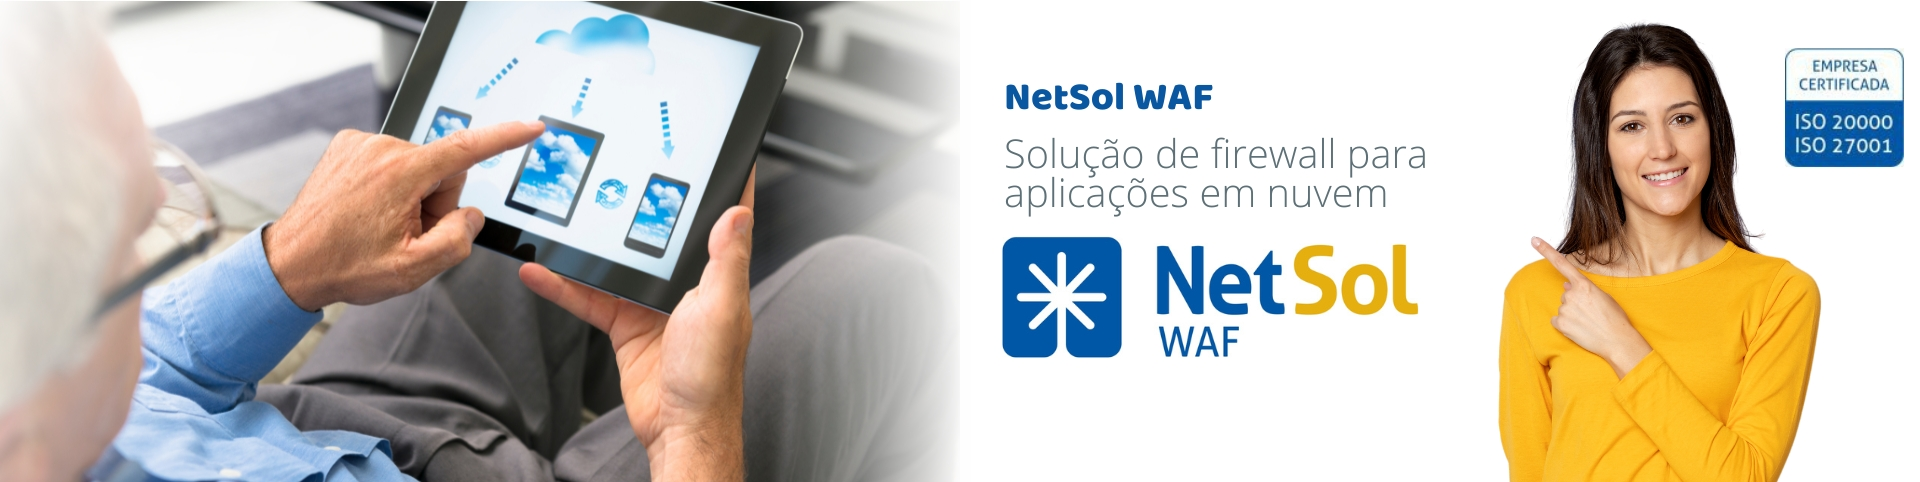 NetSol_WAF